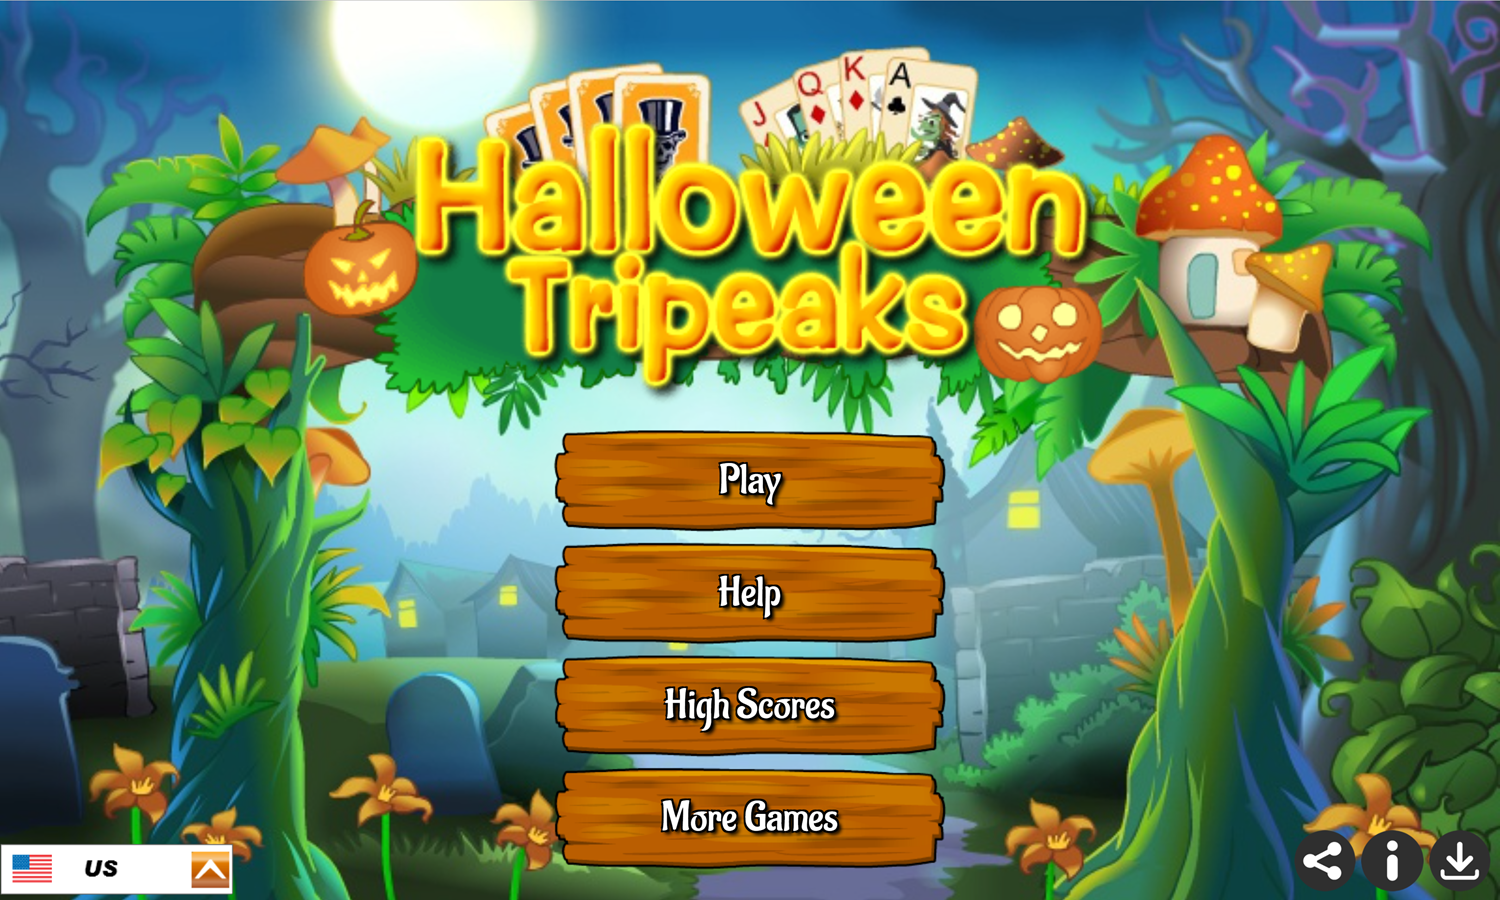 Halloween Tripeaks Game Welcome Screen Screenshot.